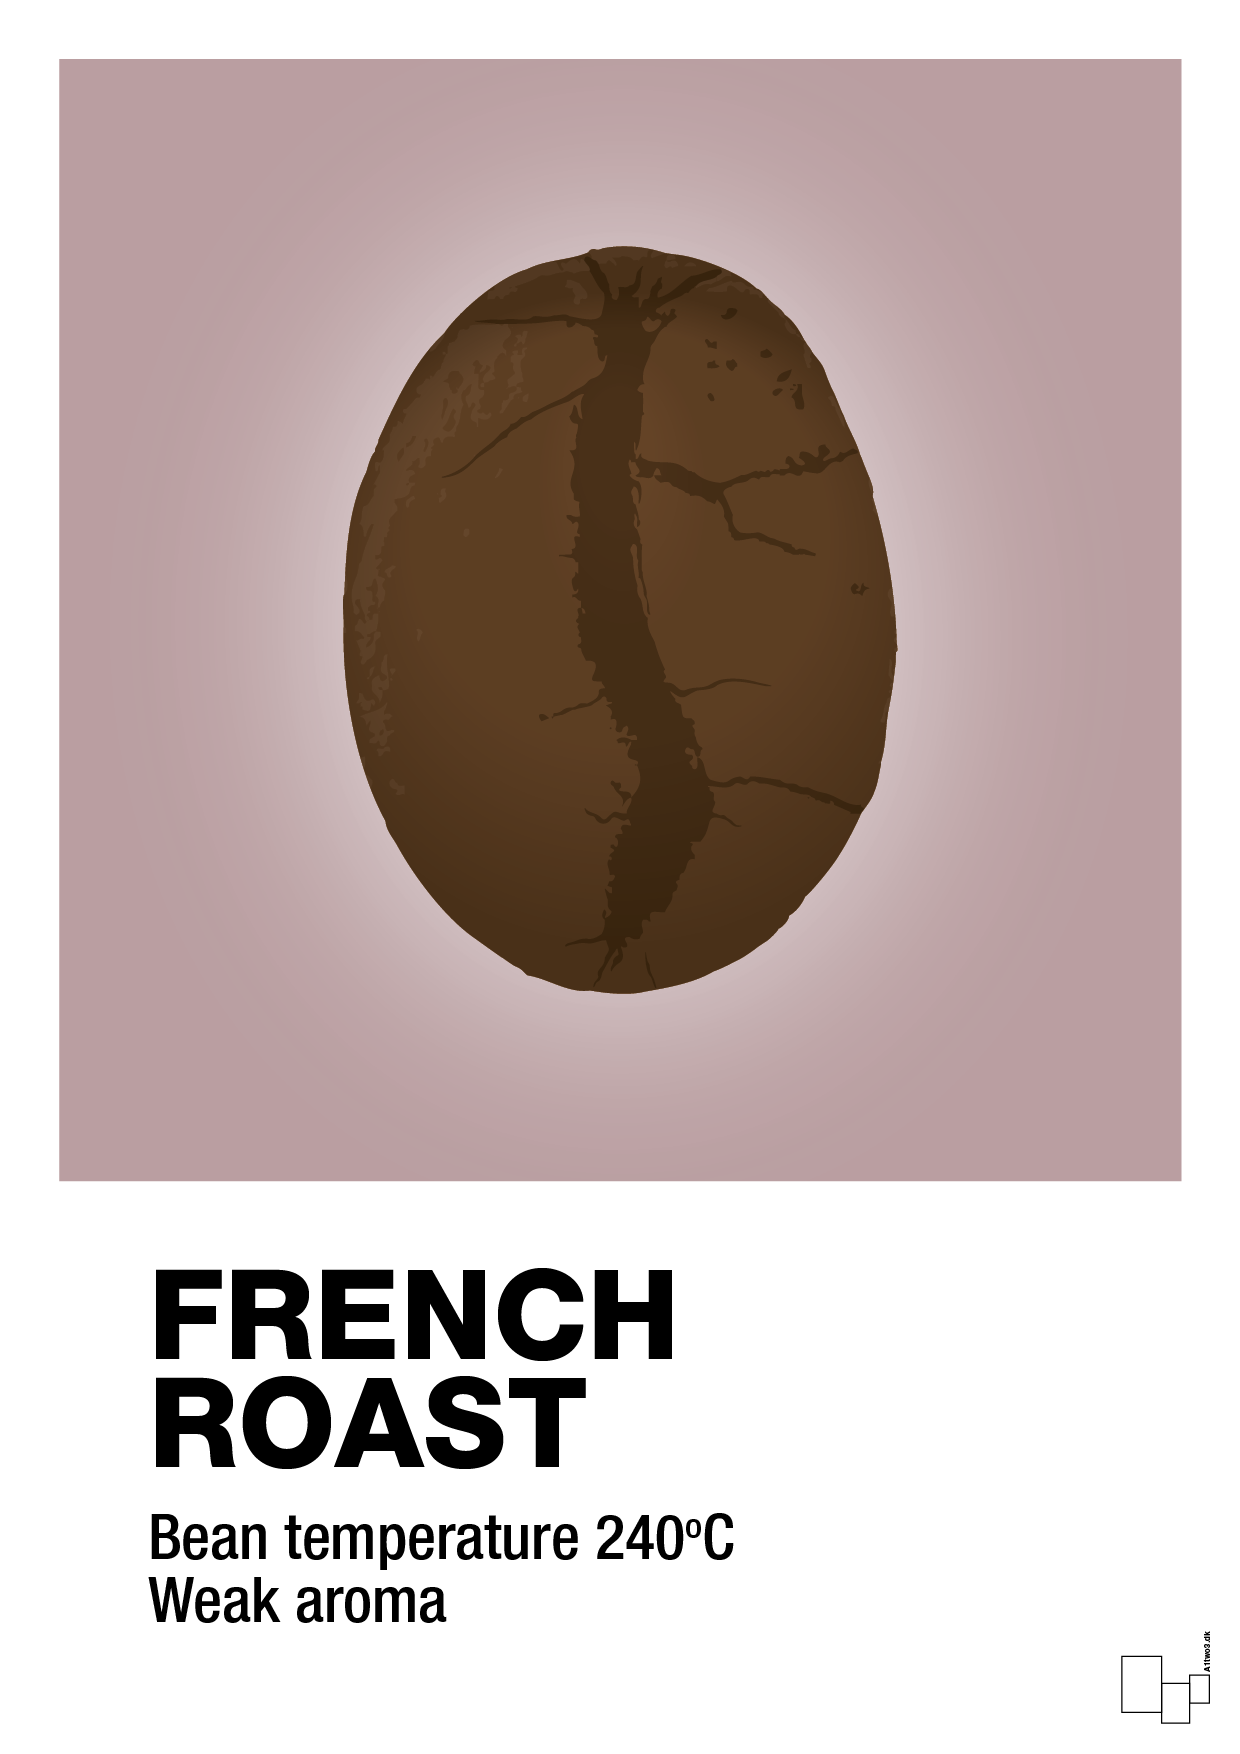 french roast - Plakat med Mad & Drikke i Light Rose